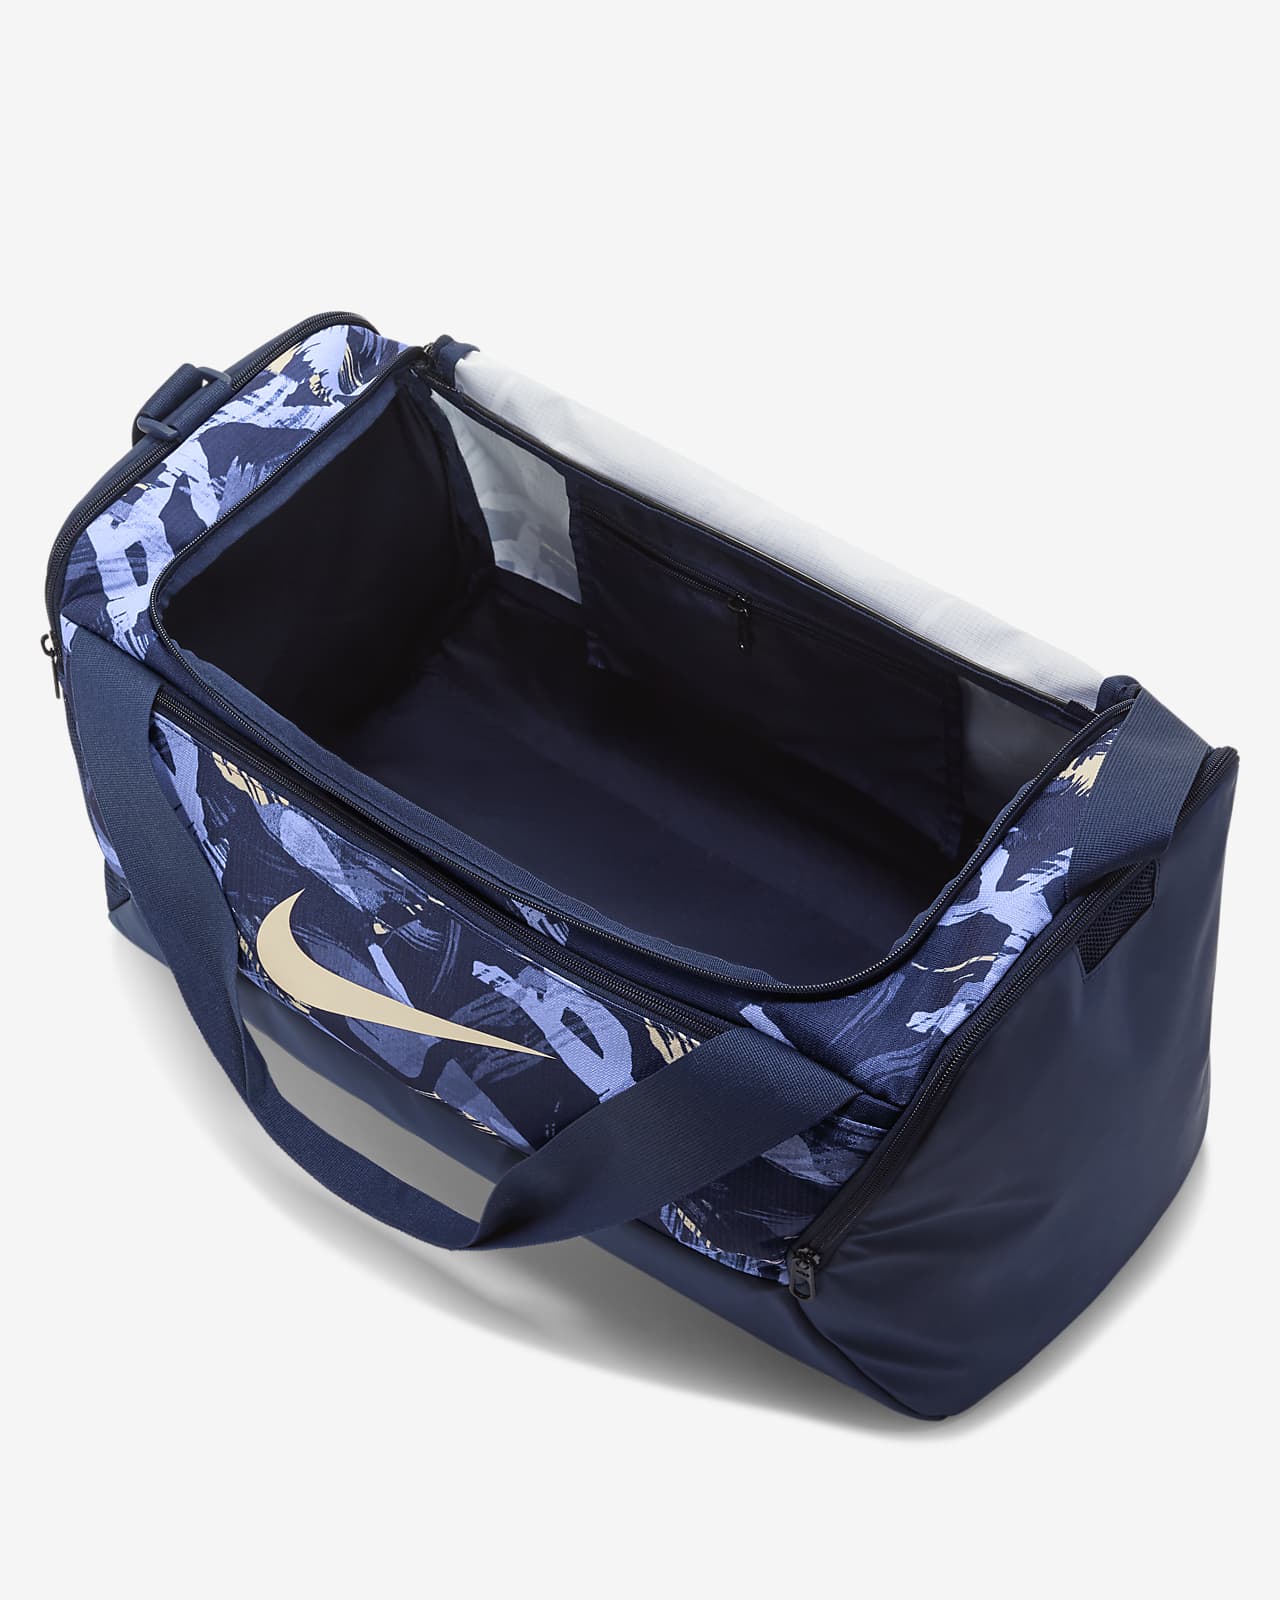 Brasilia Printed Duffel Bag (Small, 41L). Nike.com